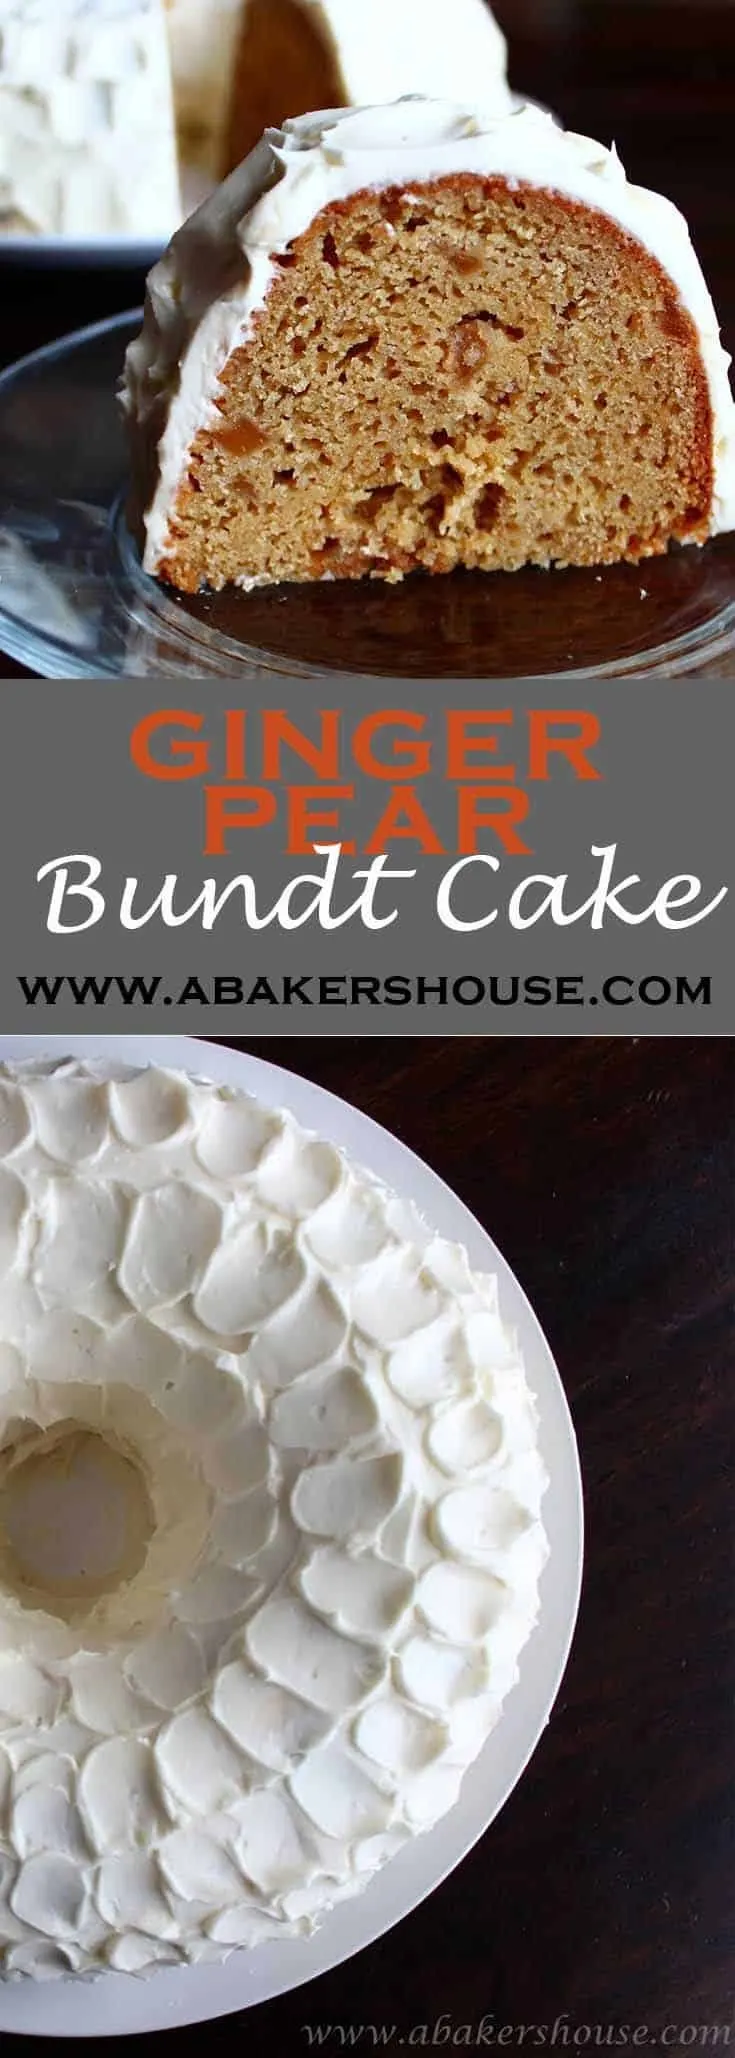 https://www.abakershouse.com/wp-content/uploads/2012/11/Long-Pin-Ginger-Pear-Bundt-Cake-735x2058.jpg.webp